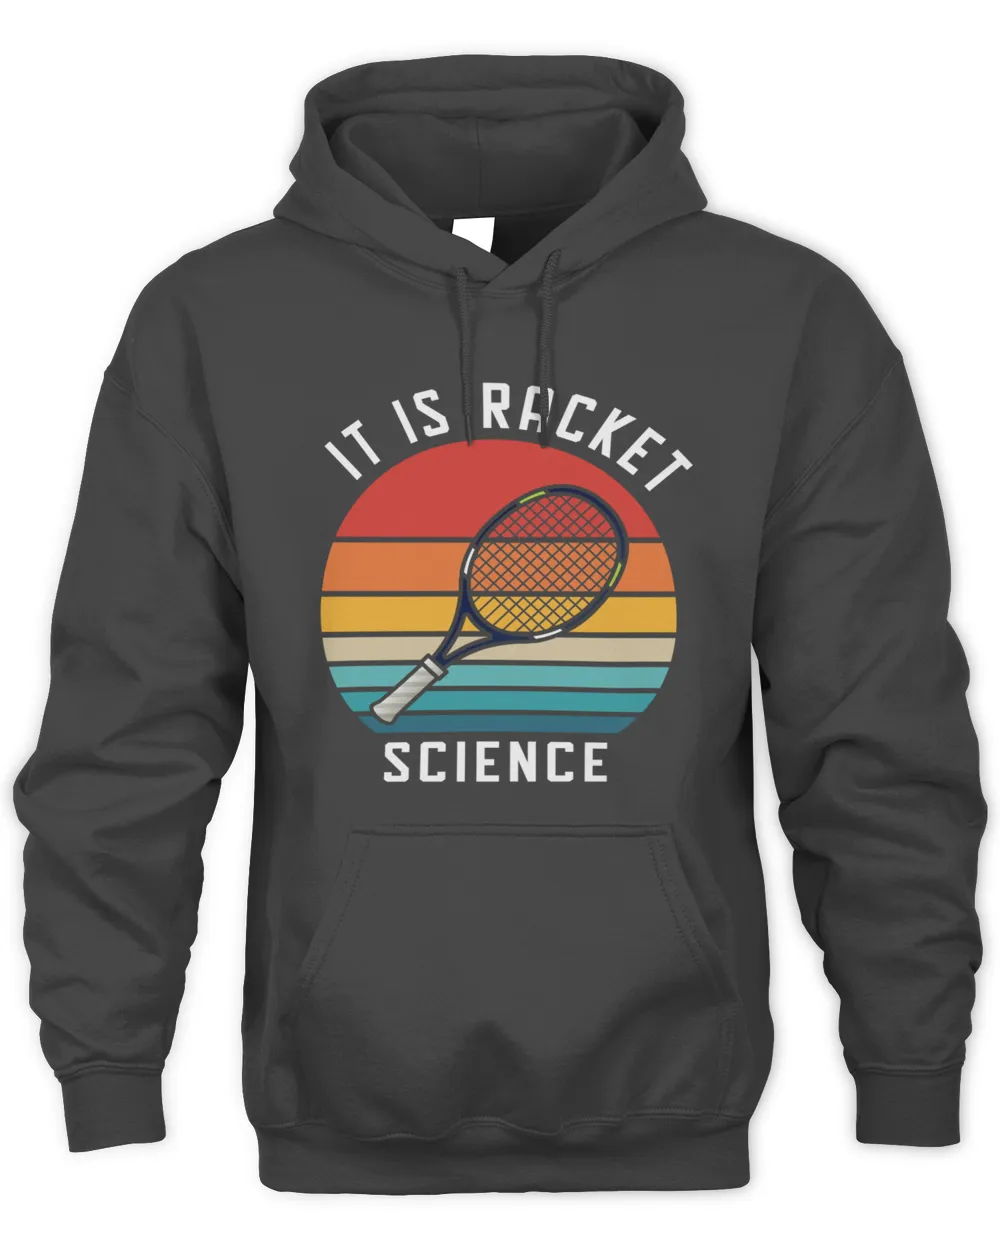 It is Racket science